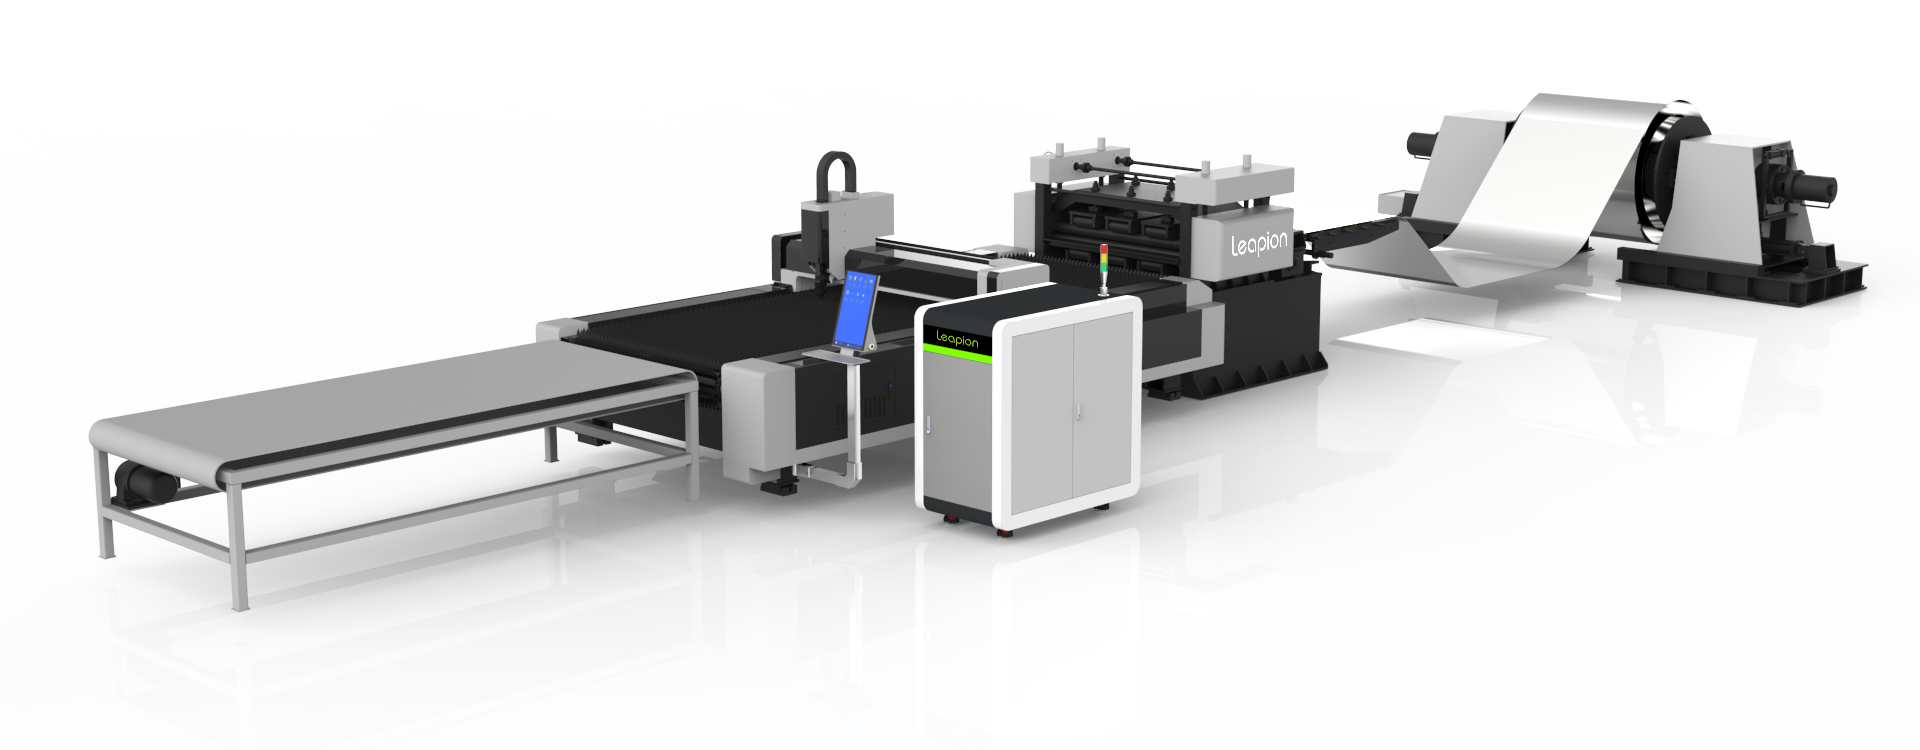 Quais são as vantagens do aplicativo da máquina de corte a laser inteligente e nivelamento?